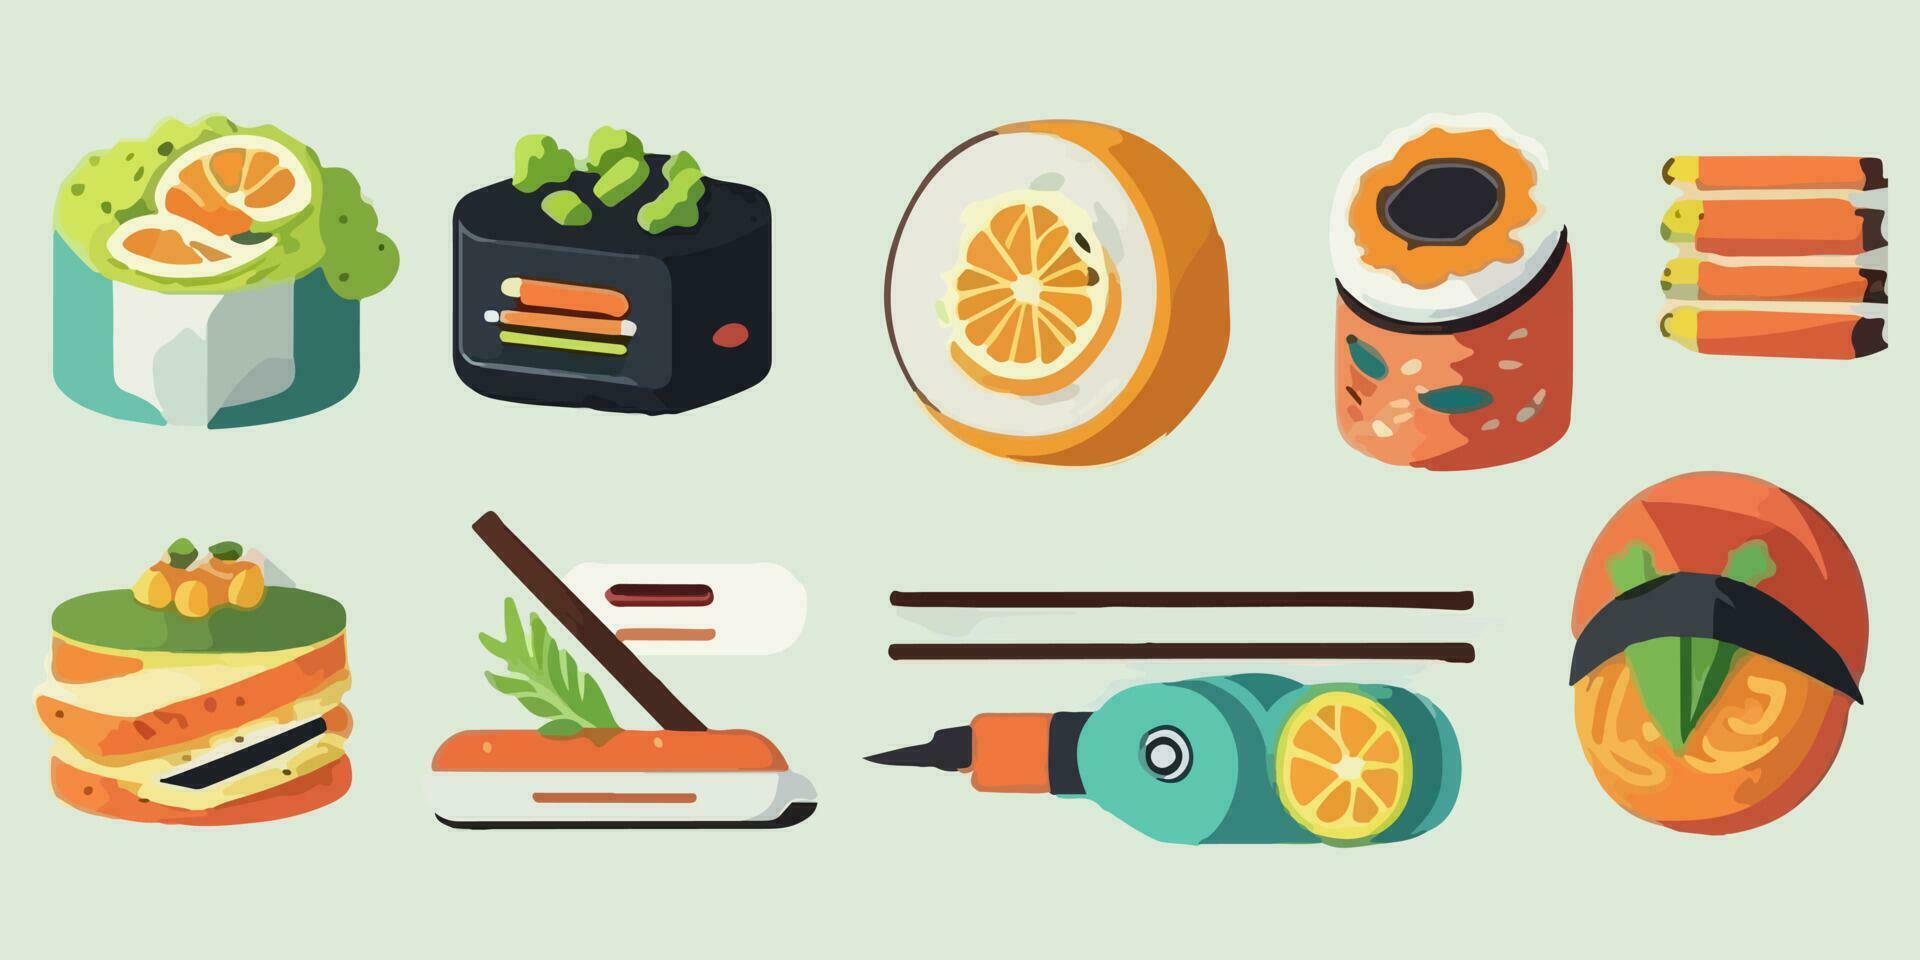 caprichoso Sushi sinfonia, brincalhão vetor ilustração do colorida rolos